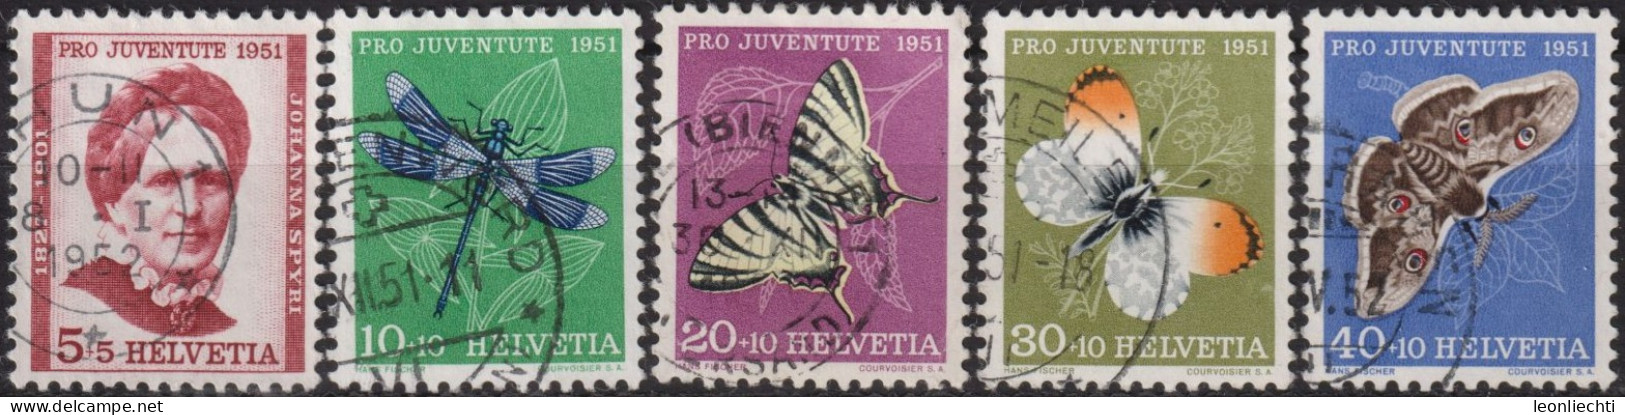 1951 Schweiz Pro Juventute ° Zum:CH J138-J142,Yt:CH 512-516, Mi:CH 561-265, Insekten Und Johanna Spyri - Oblitérés